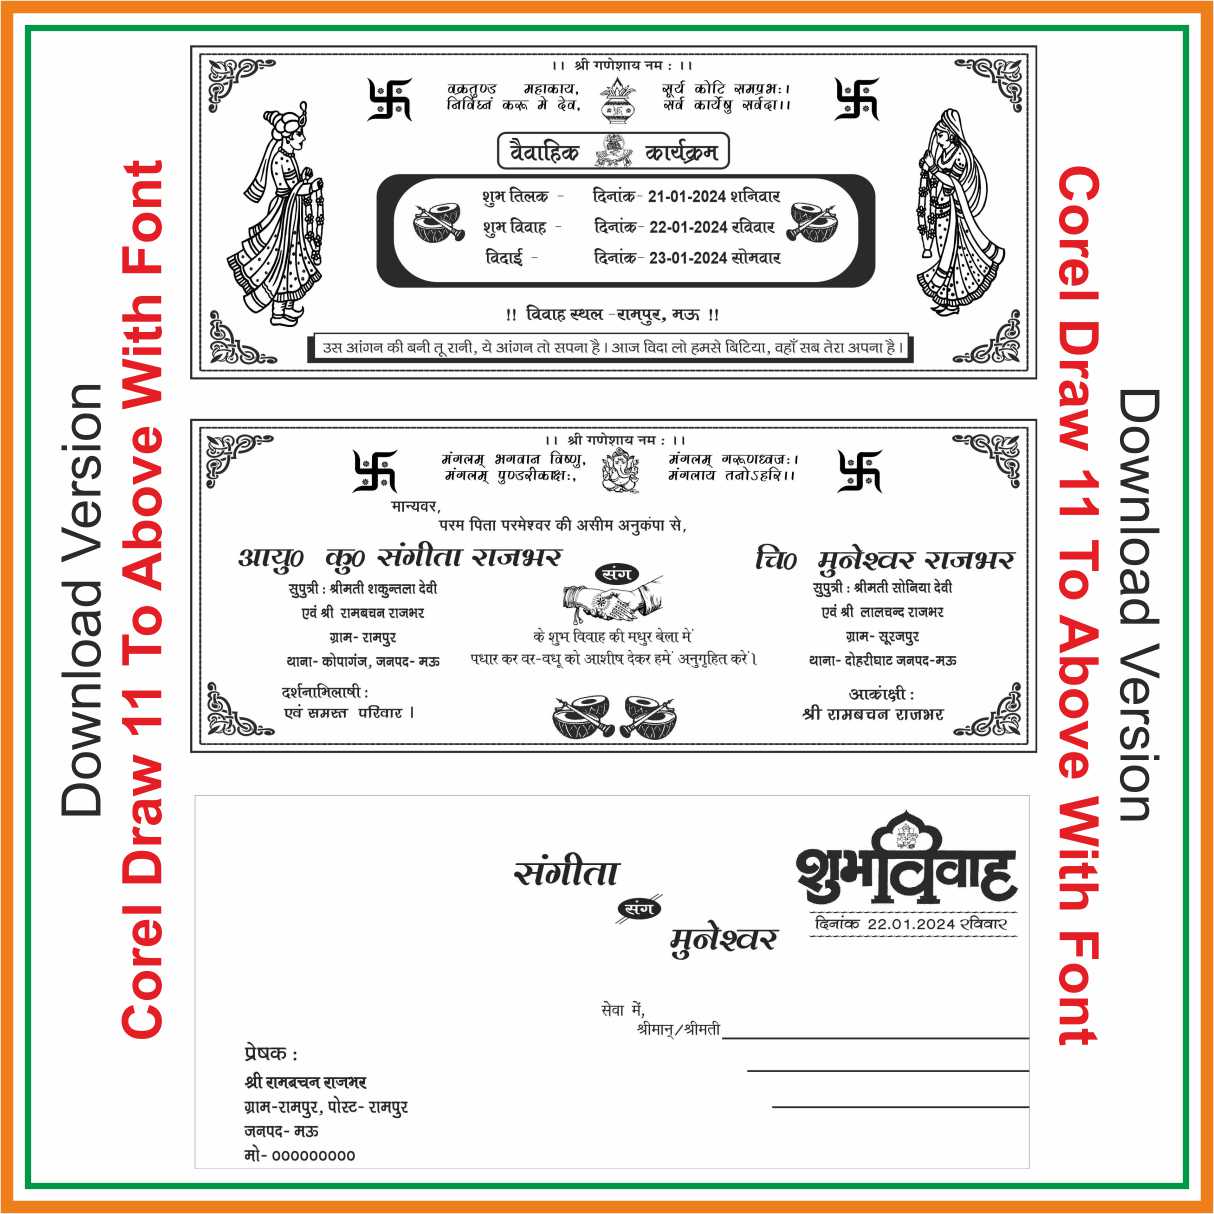 Fancy Wedding Card Of hindu 2024 Corel Draw-11 With Font WEDDING CARD HINDU MARRIAGE CARD,HINDU WEDDING CARD,WEDDING CARD 2024,WEDDING CARD HINDI